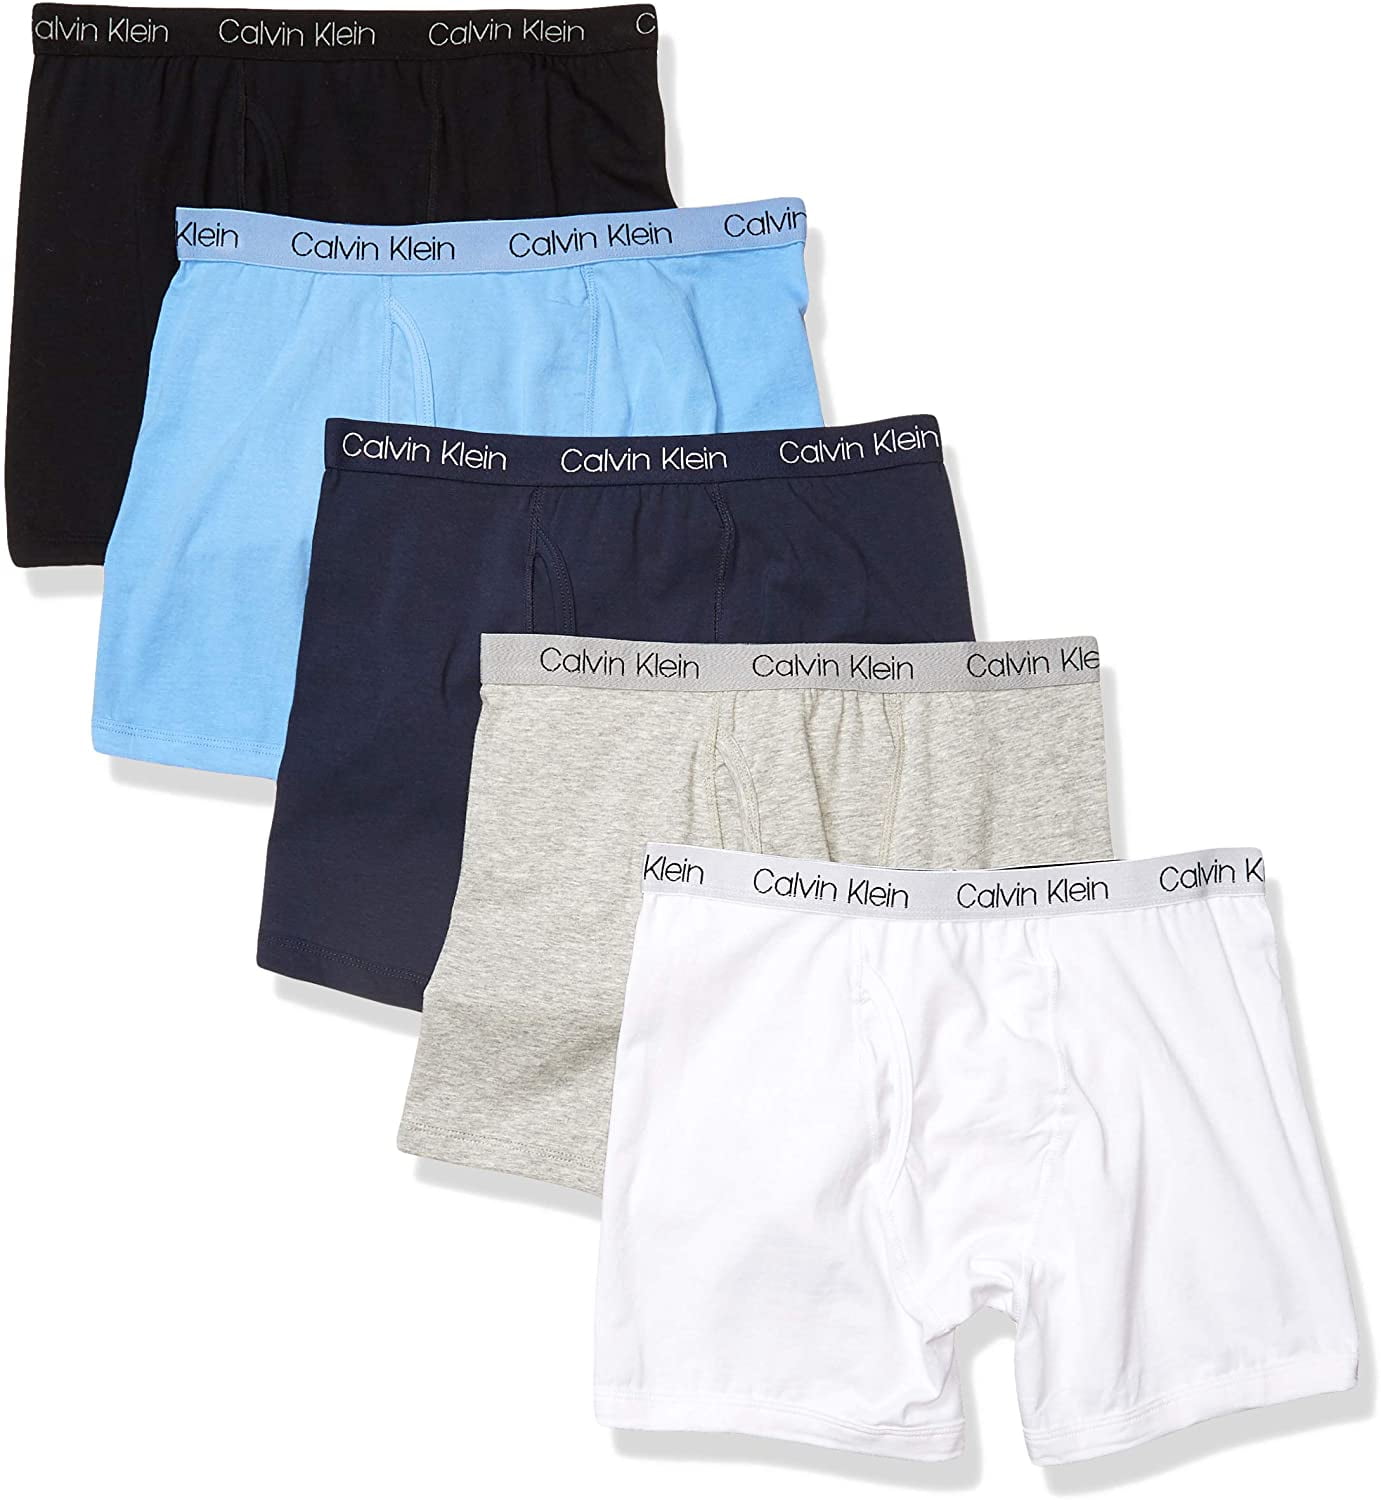 Calvin Klein 269376 Boys Assorted Boxer Briefs 2 Pack Multi Underwear Size  XL